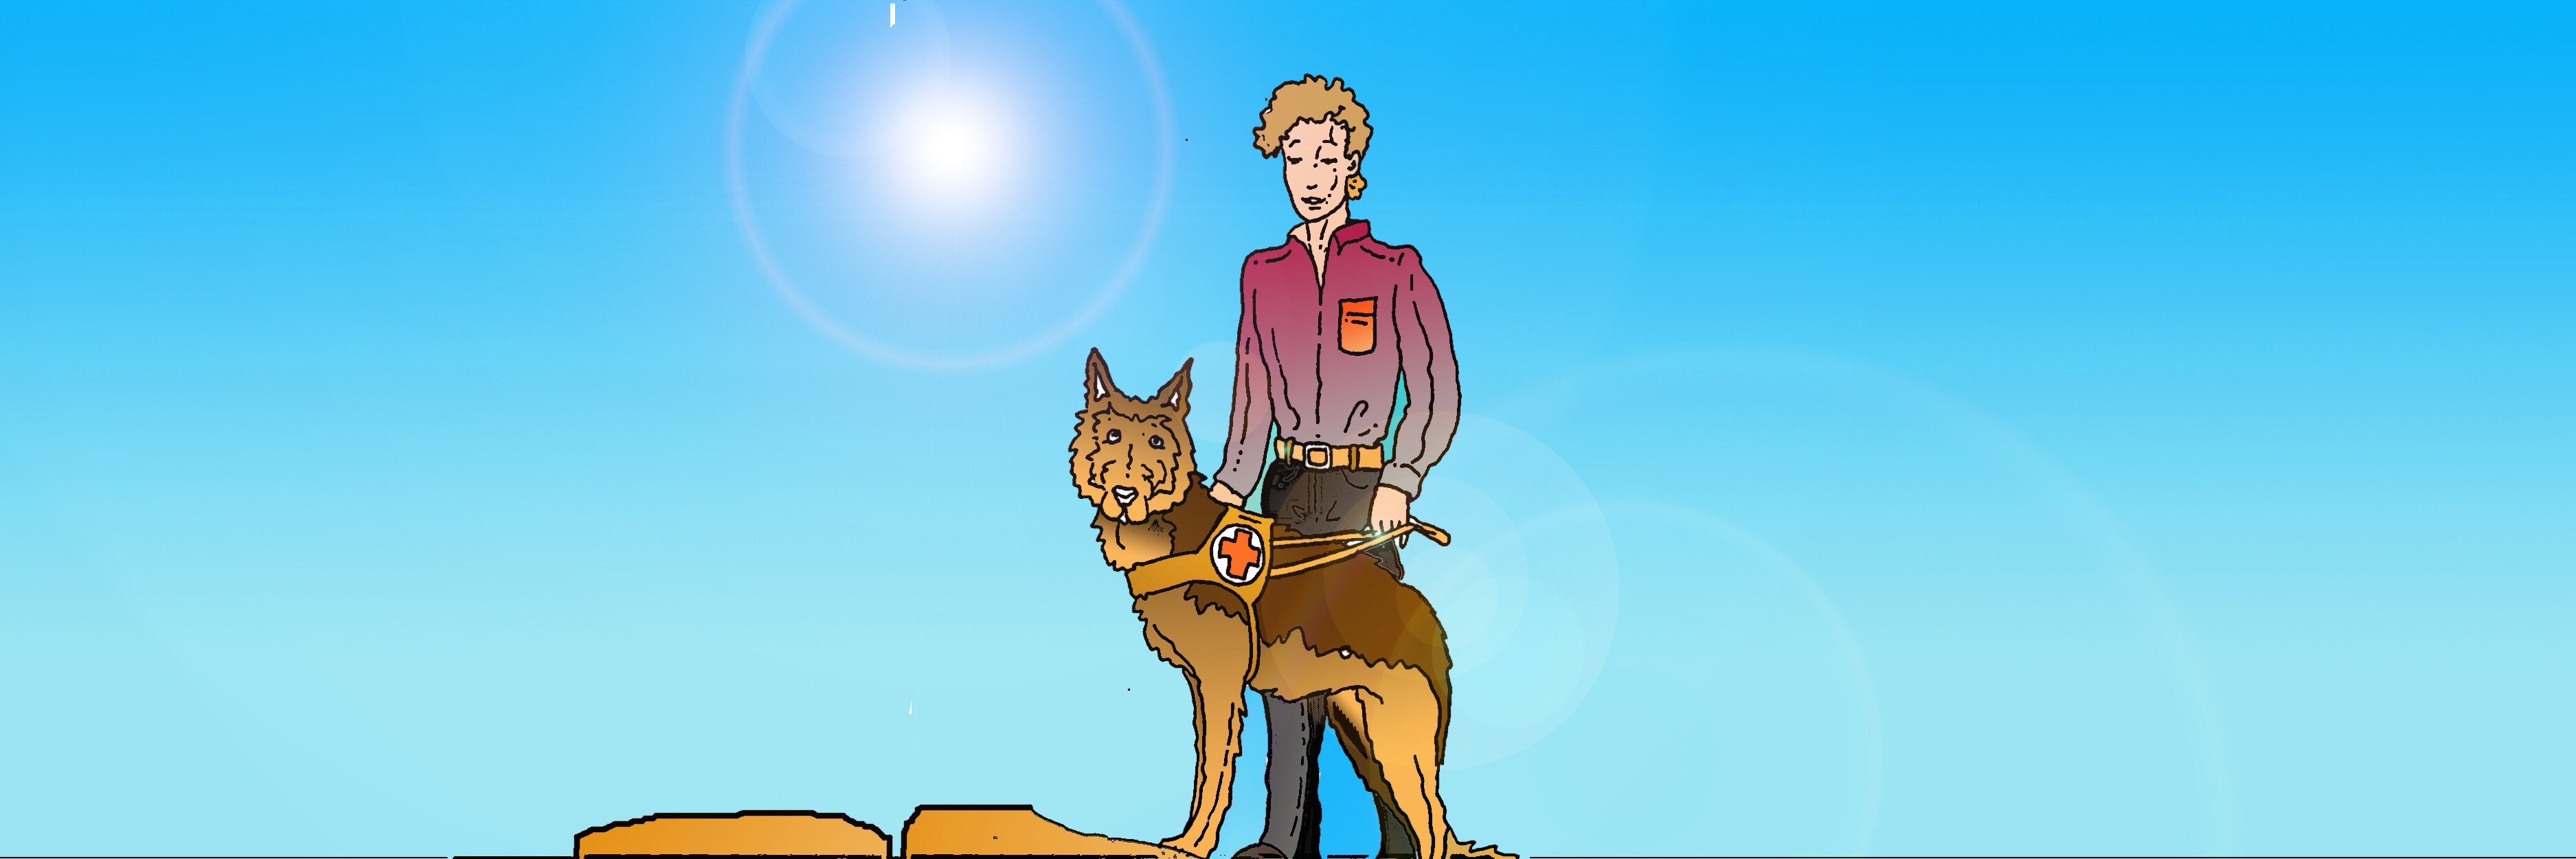 Cornice composta dall'immagine di un addestratore con un cane pastore tedesco al guinzaglio.